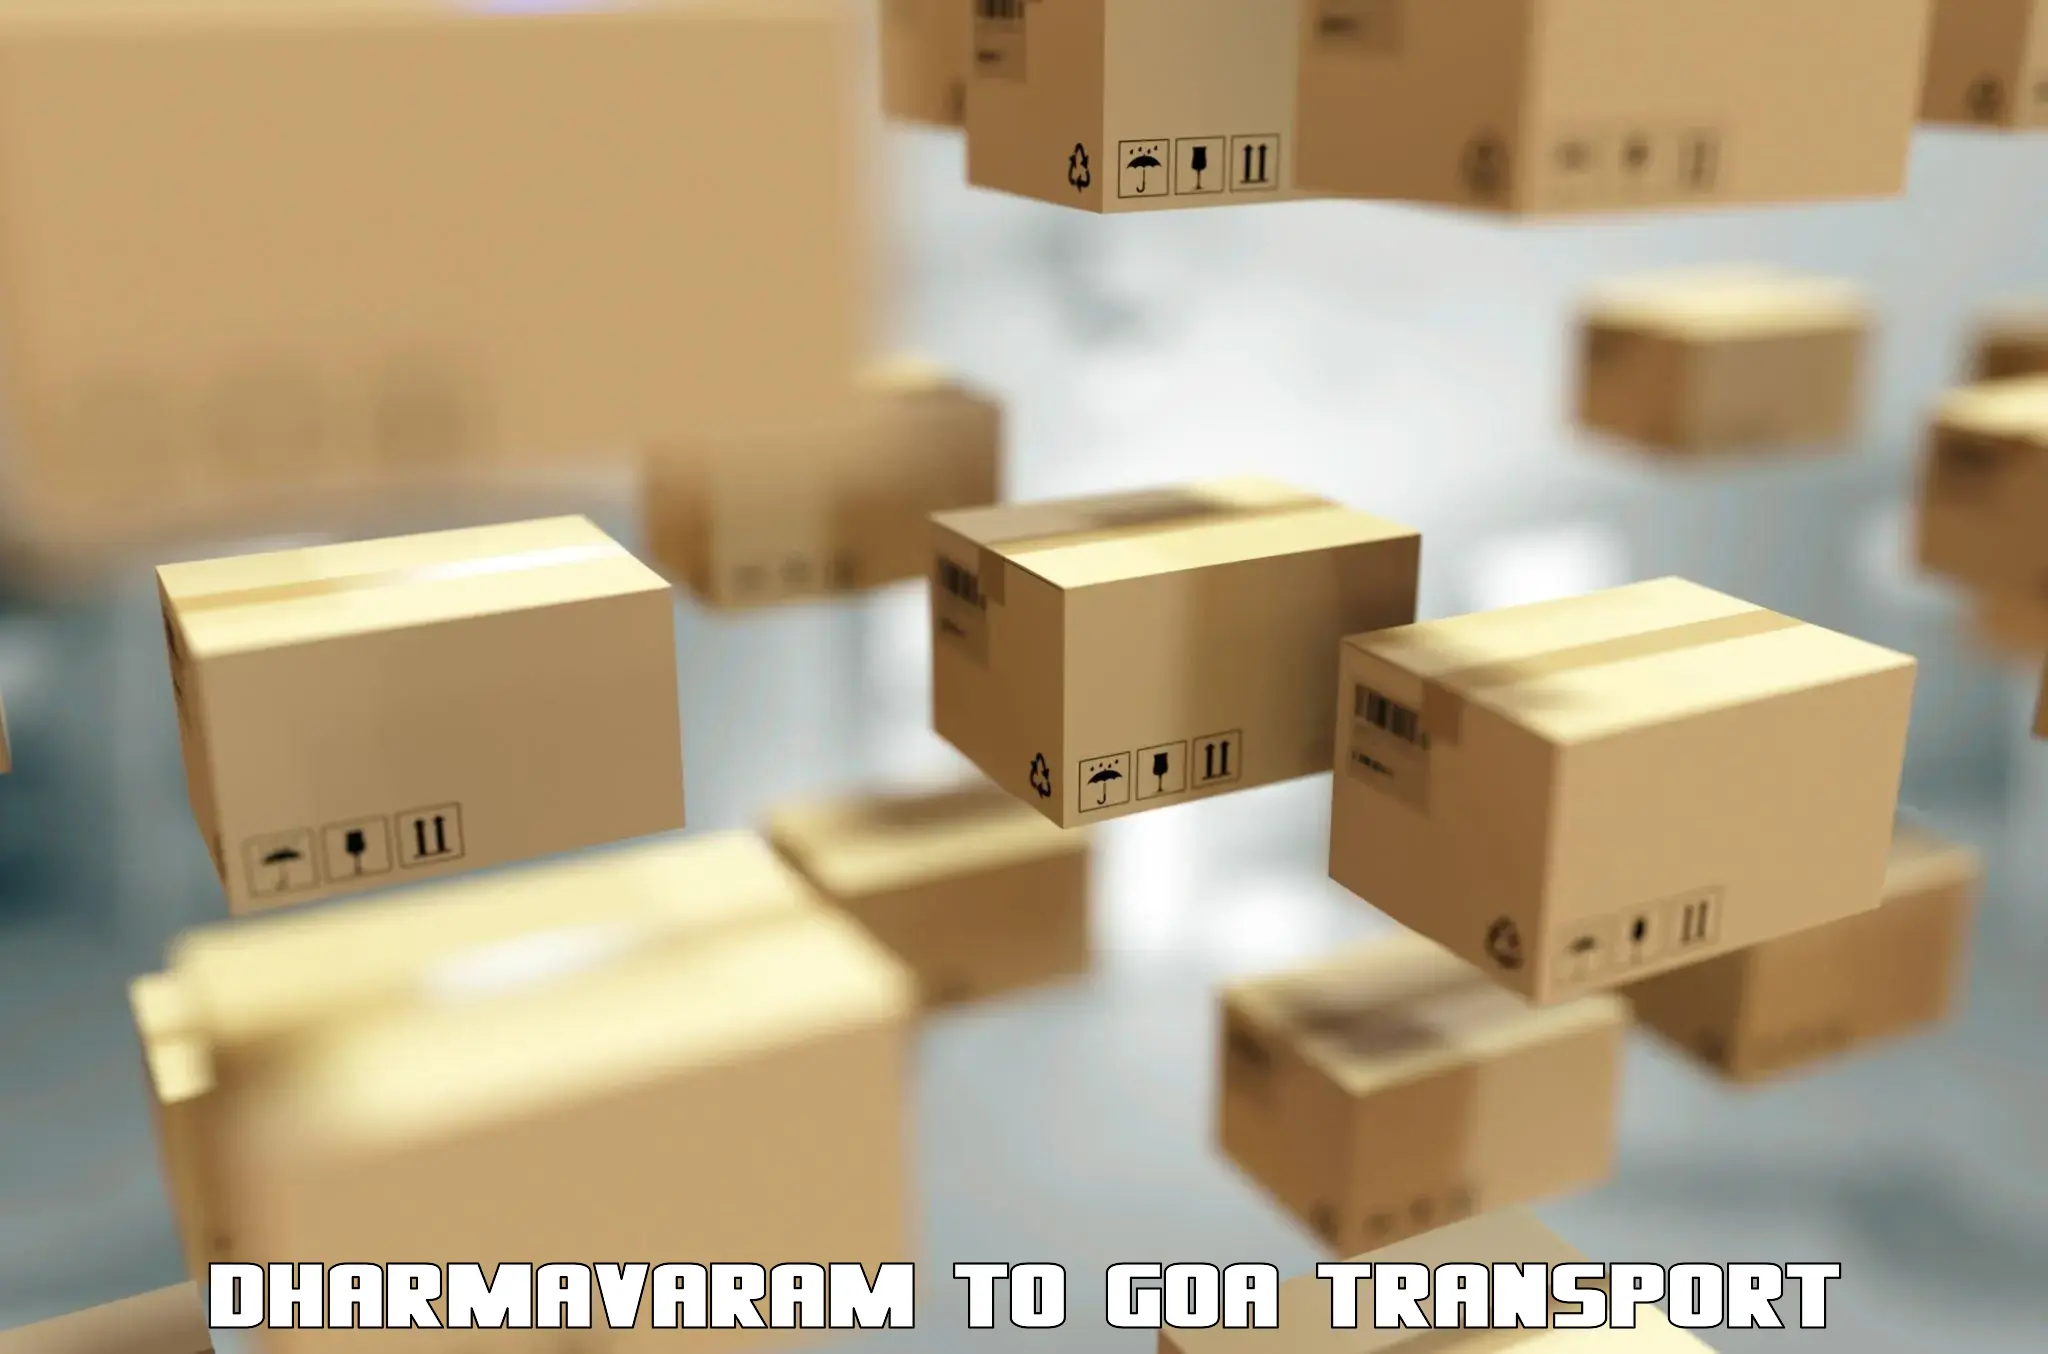 Commercial transport service Dharmavaram to Canacona